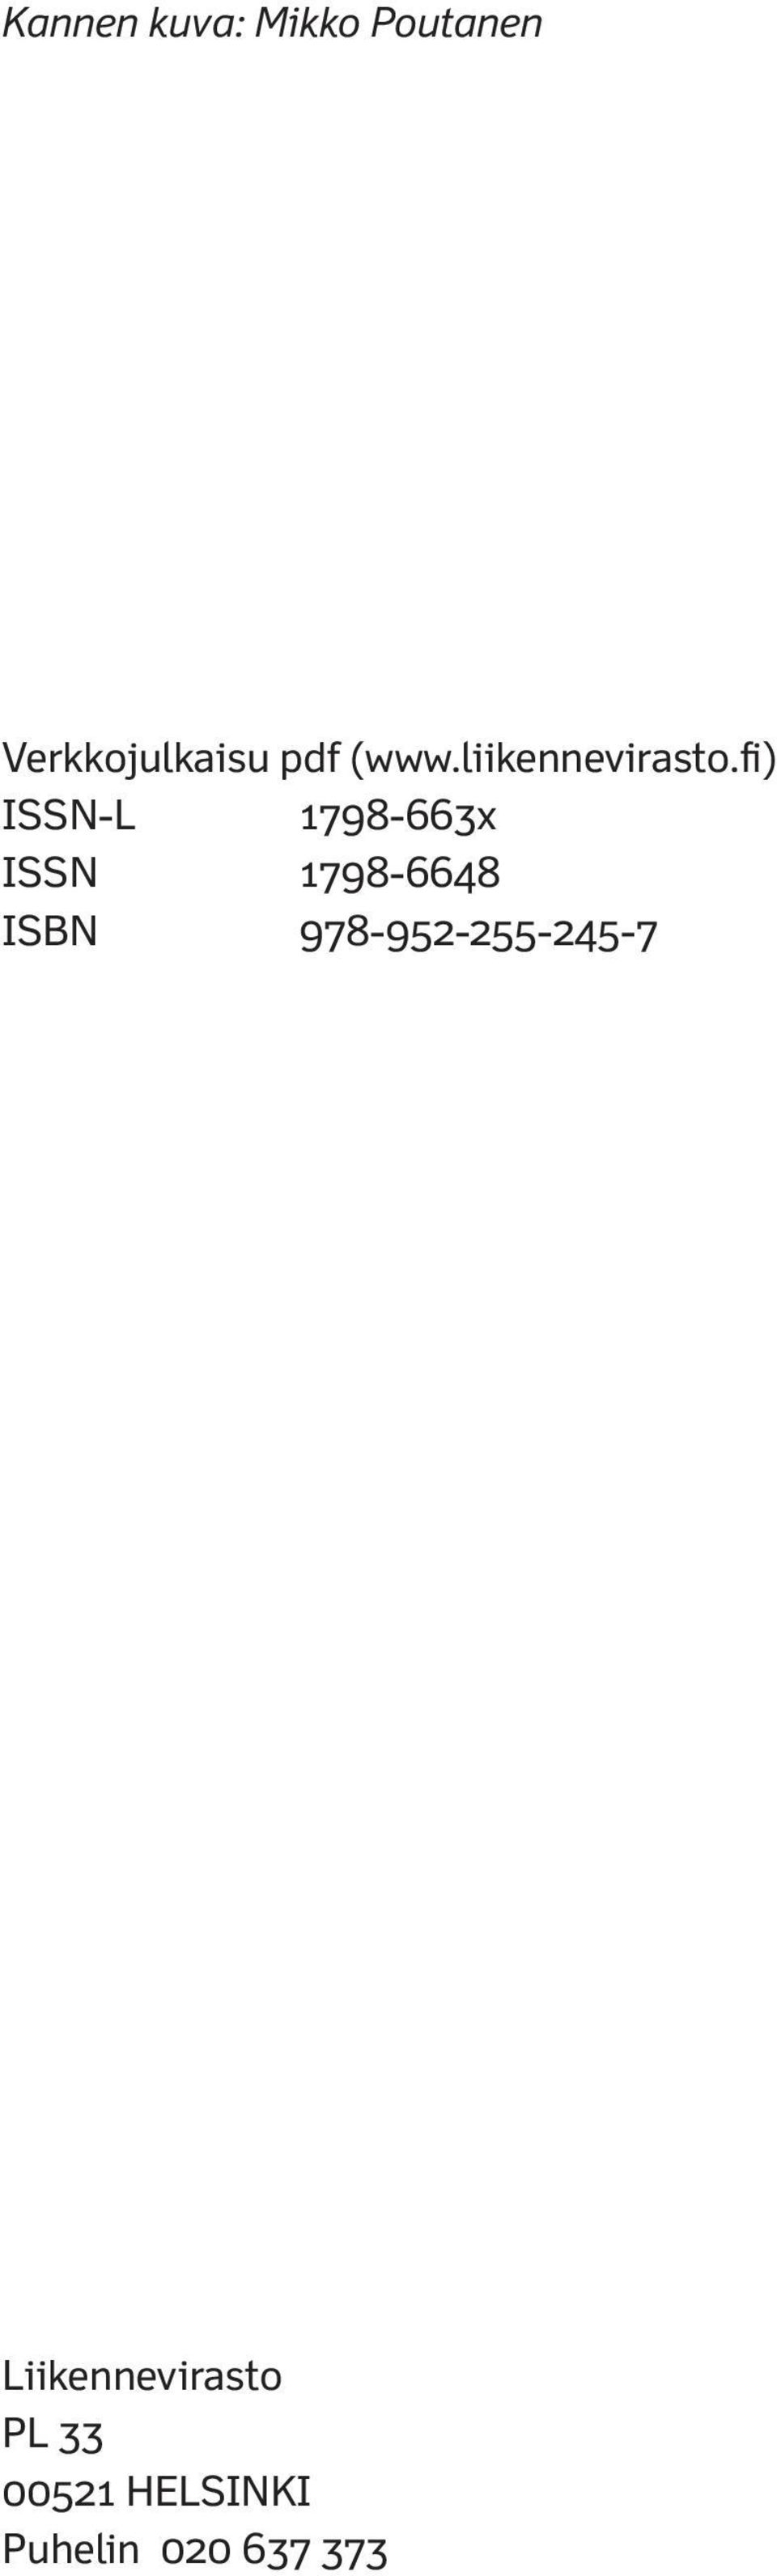 fi) ISSN-L 1798-663x ISSN 1798-6648 ISBN